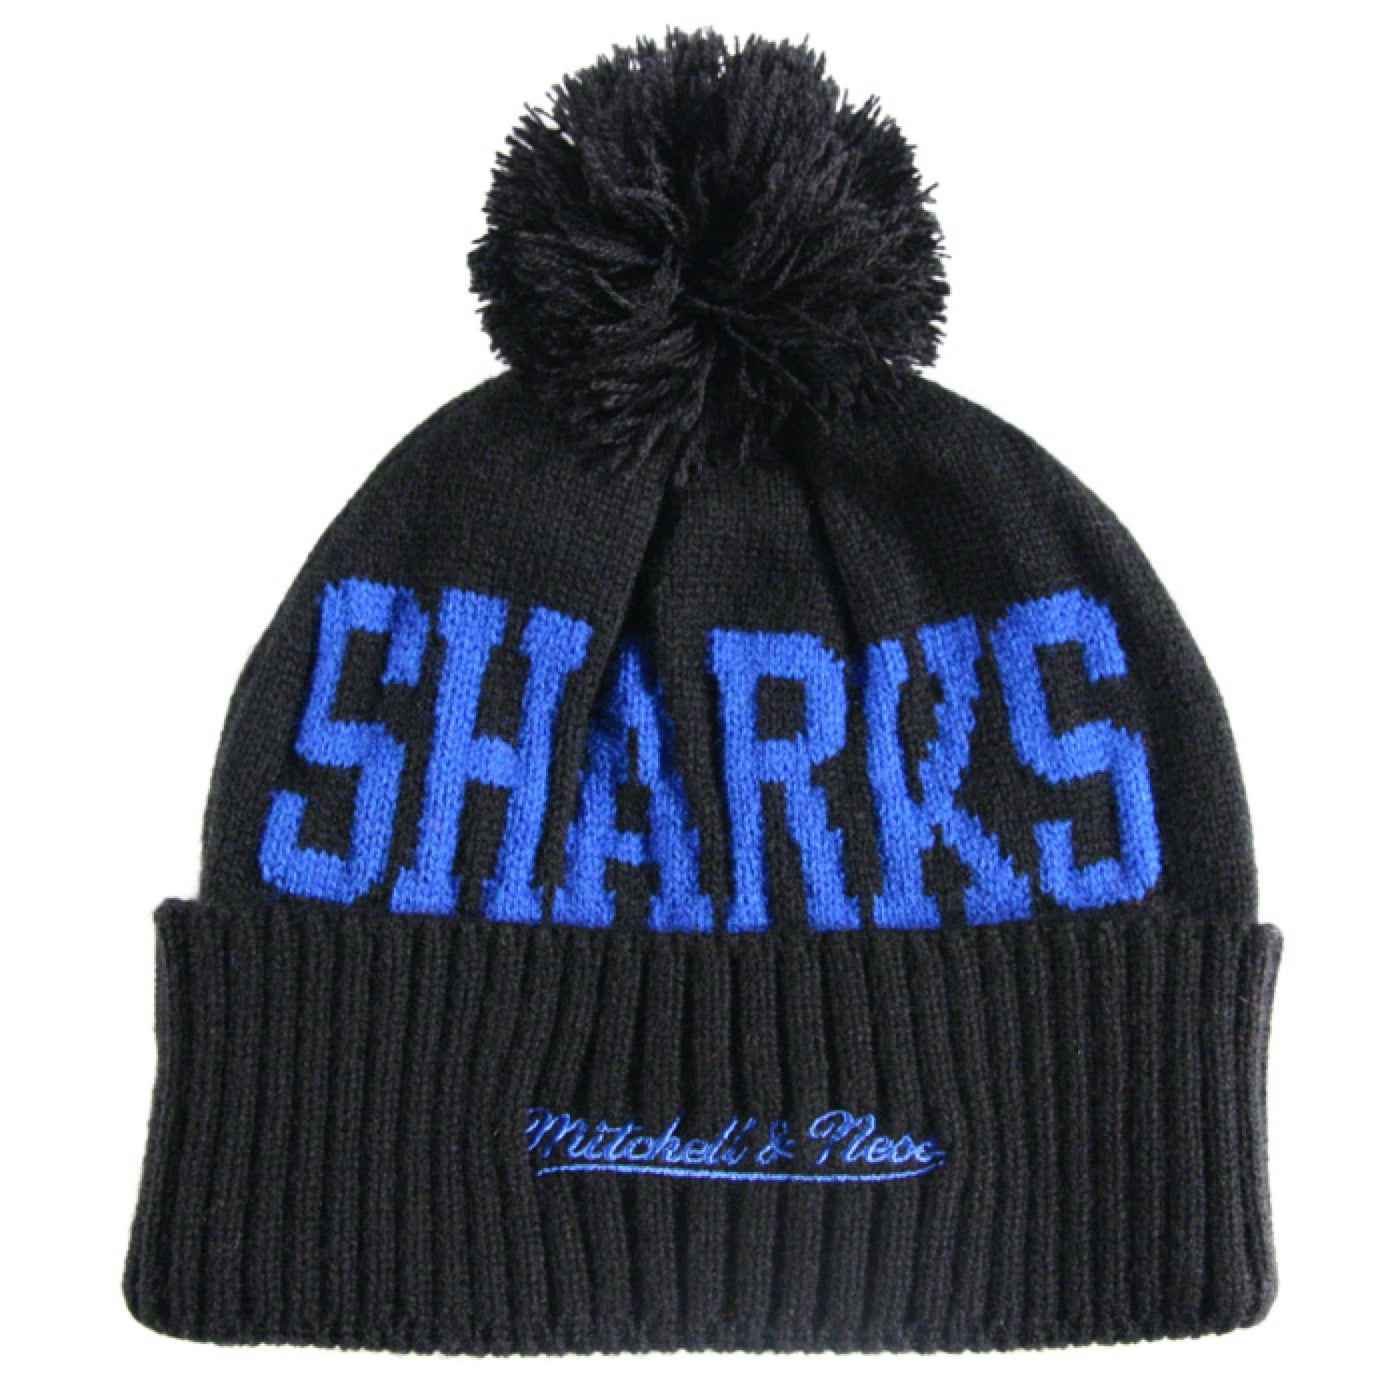 Mitchell & Ness Spikeneo beanie SJ Sharks black/blue - Shop-Tetuan